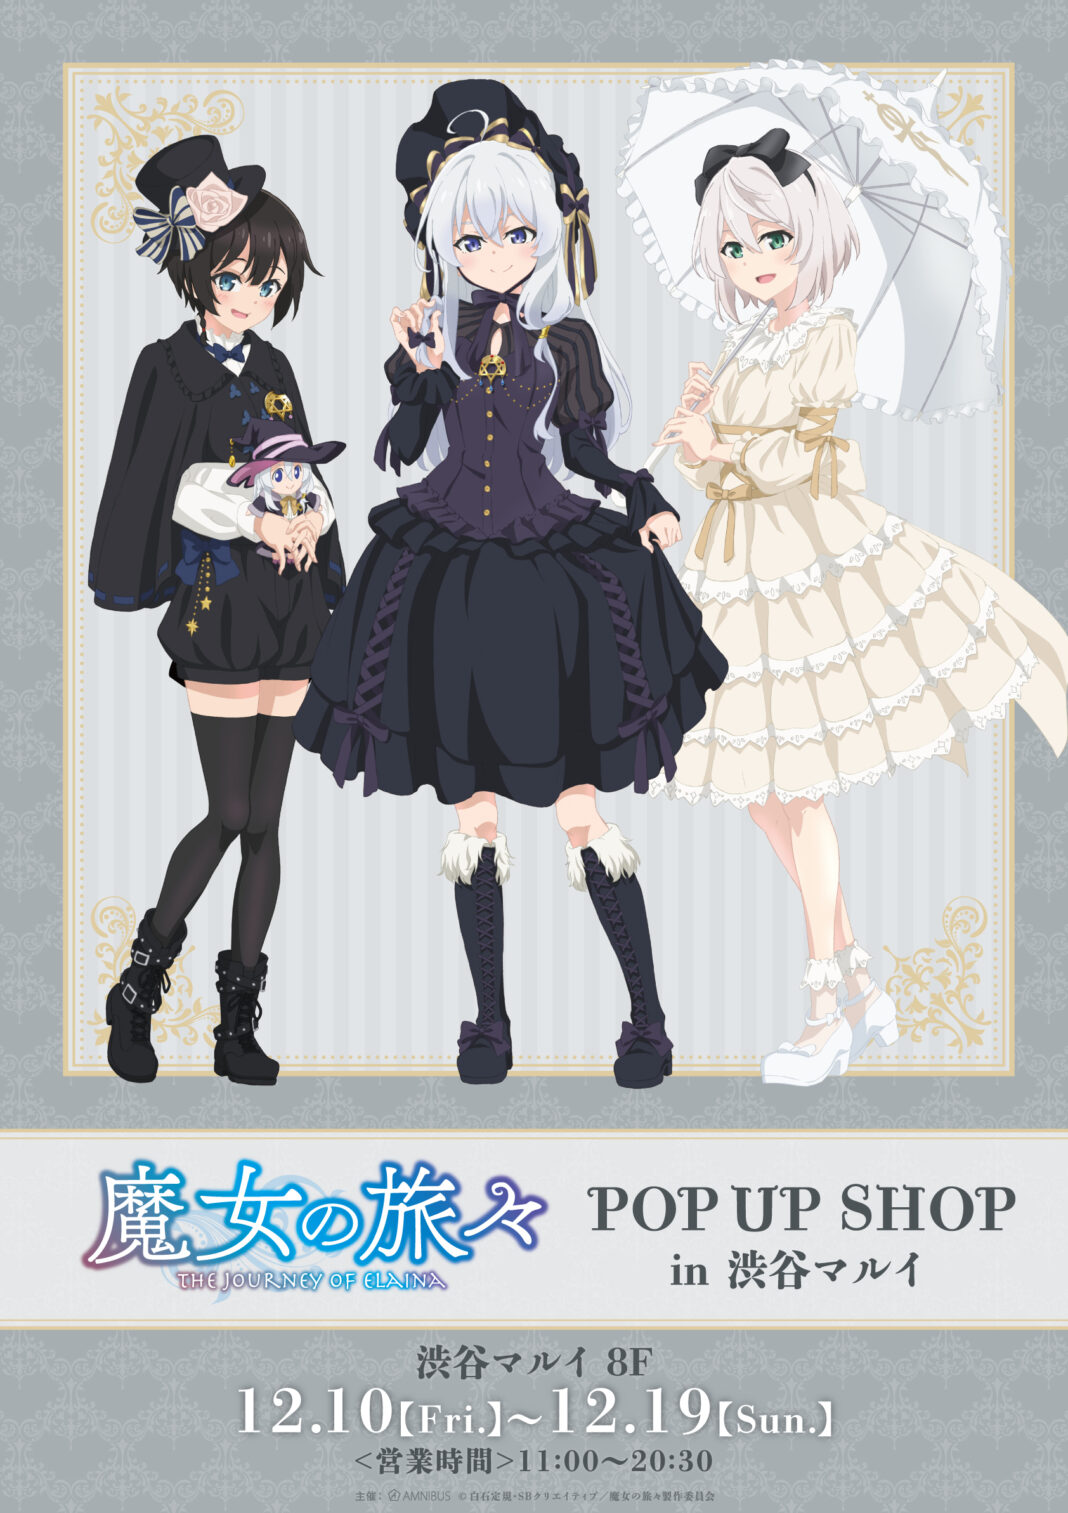 TVアニメ『魔女の旅々』のイベント「魔女の旅々 POP UP SHOP in 渋谷マルイ」の開催が決定！のメイン画像